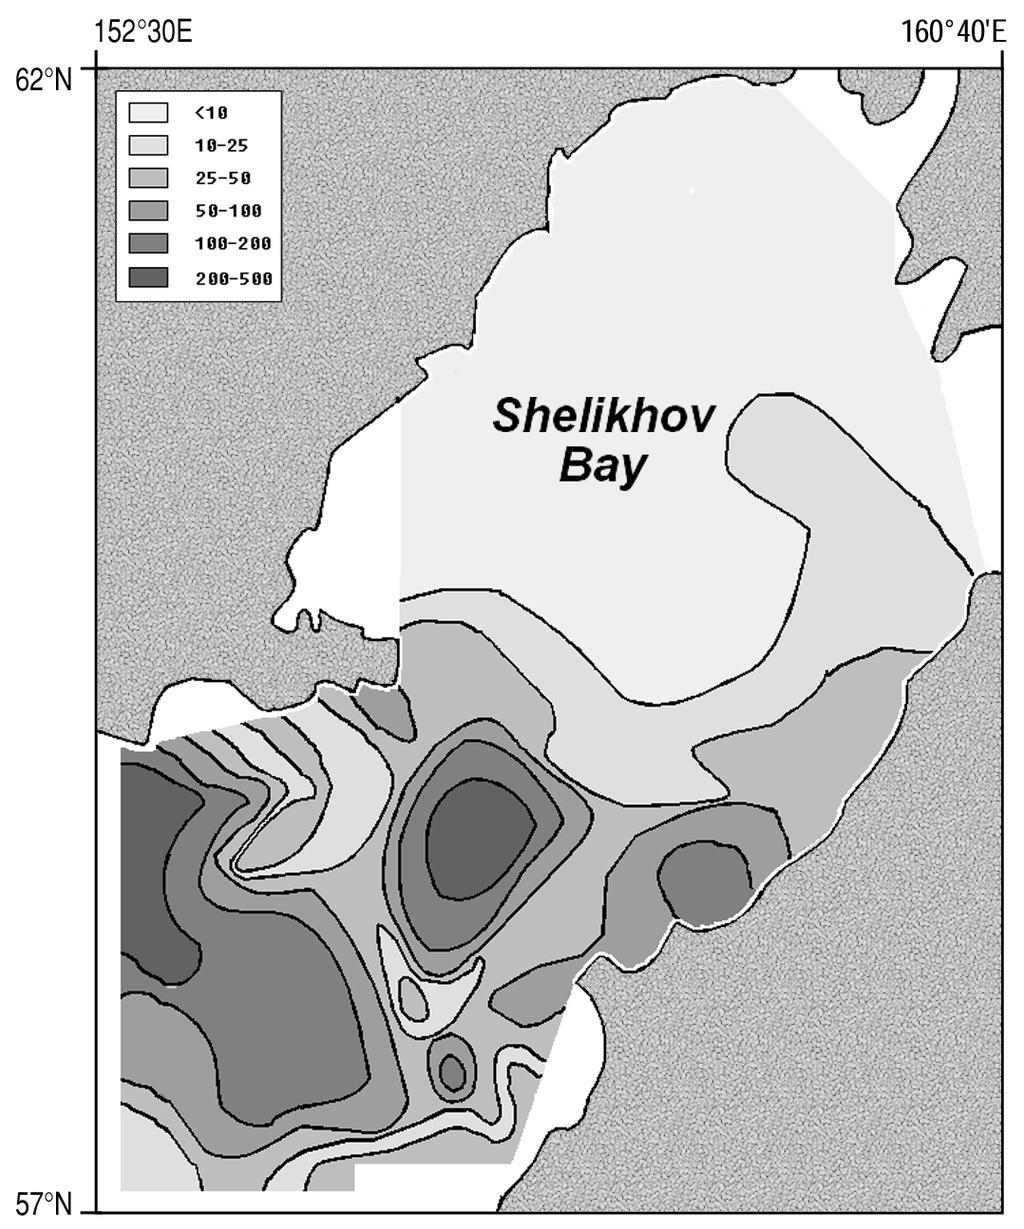 Shelikhov Bay during June 1963 (from Kotlyar 1965). Figure 22.